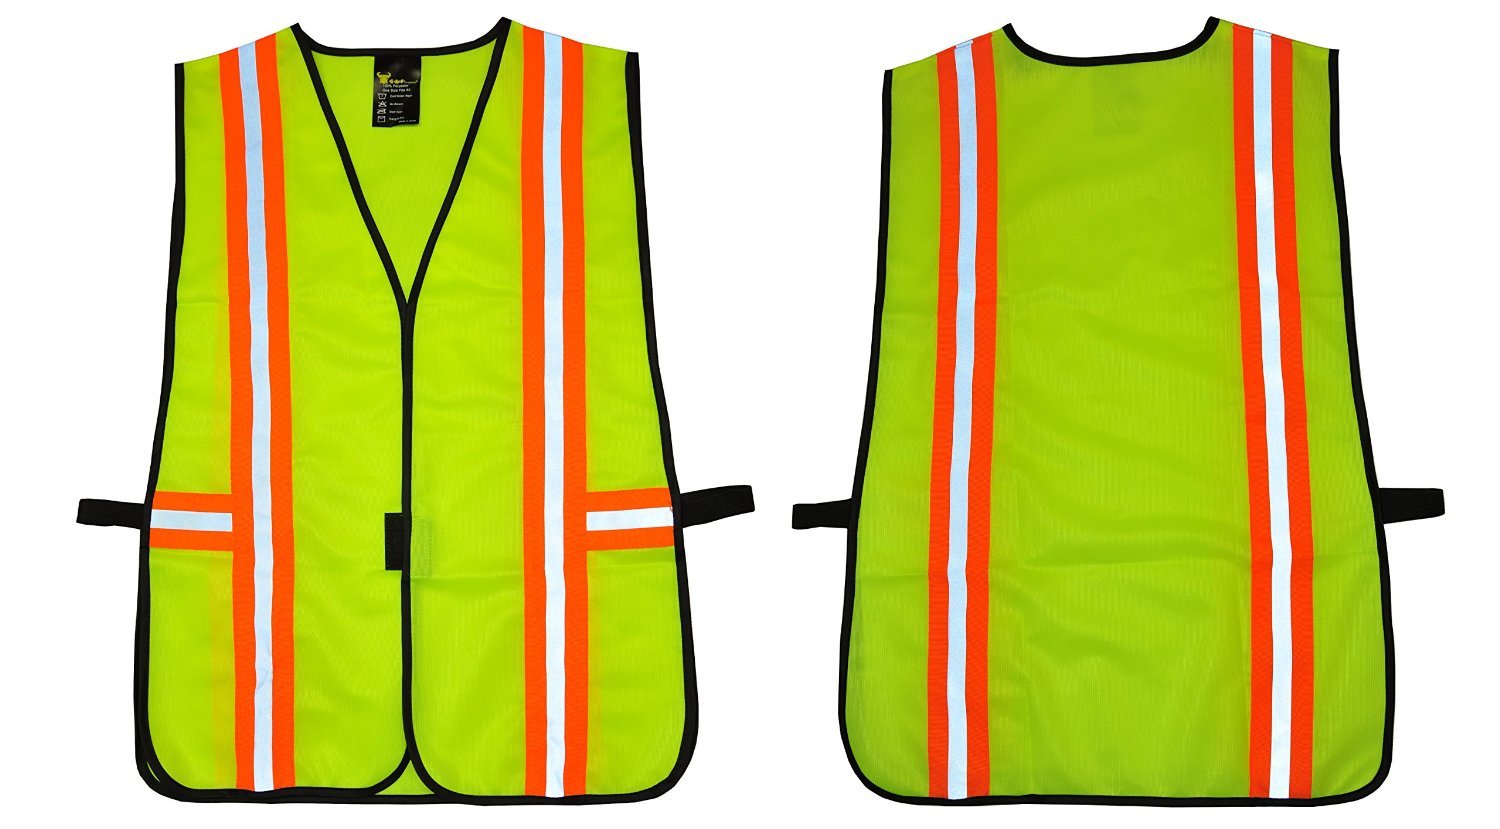 G & F Industrial Safety Vest for Men